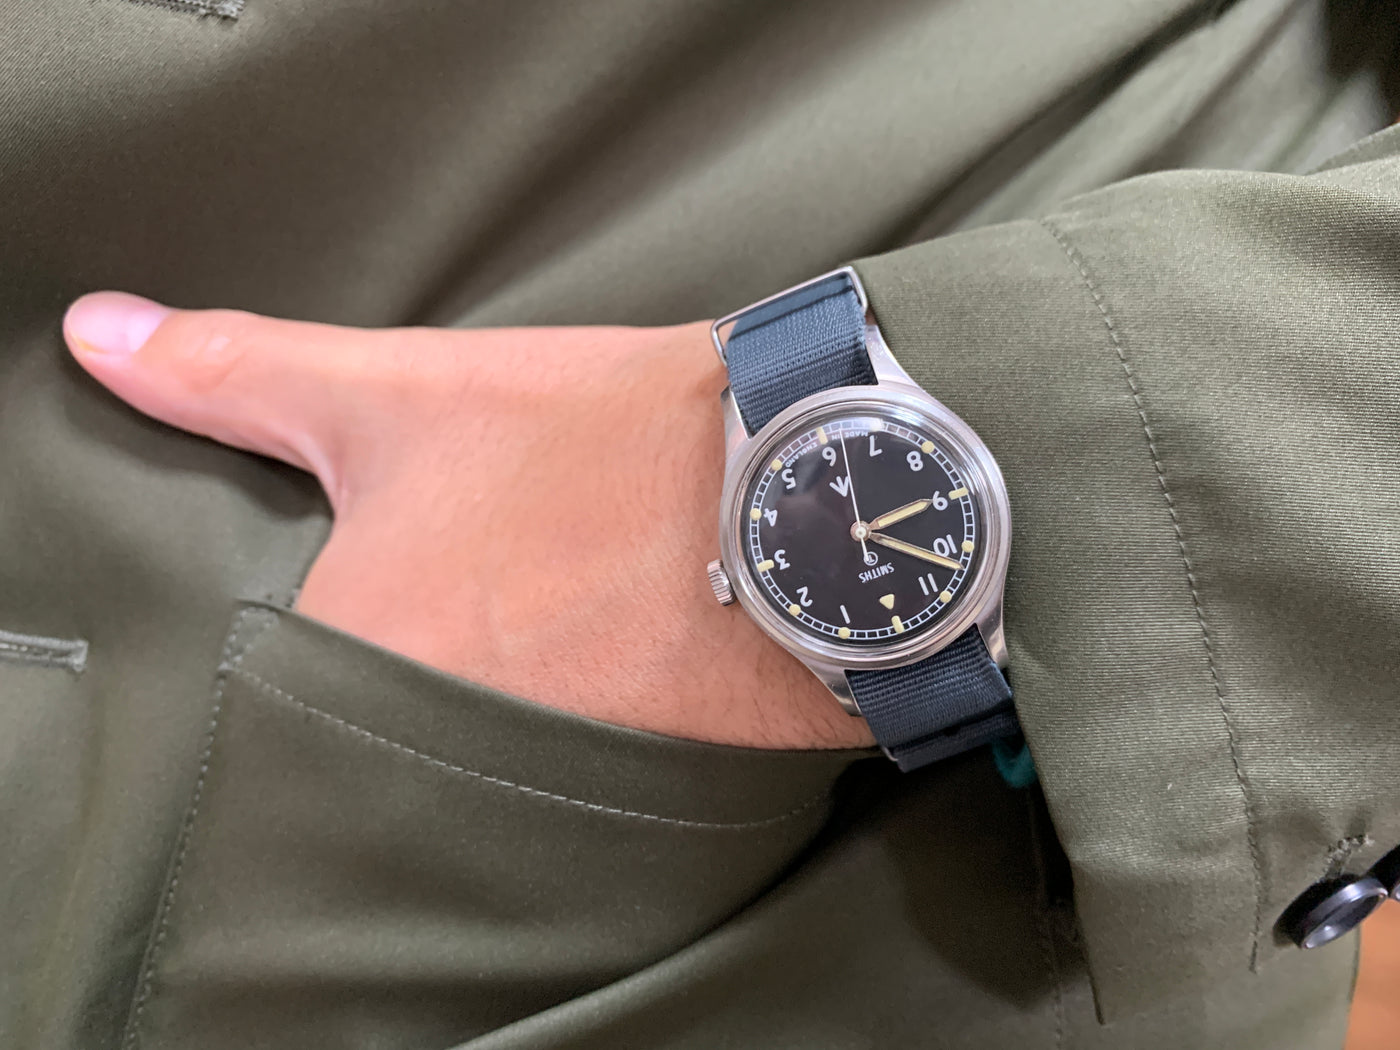 スミス（Smiths）イギリス陸軍用腕時計 ブロードアロー W10 1968年支給品